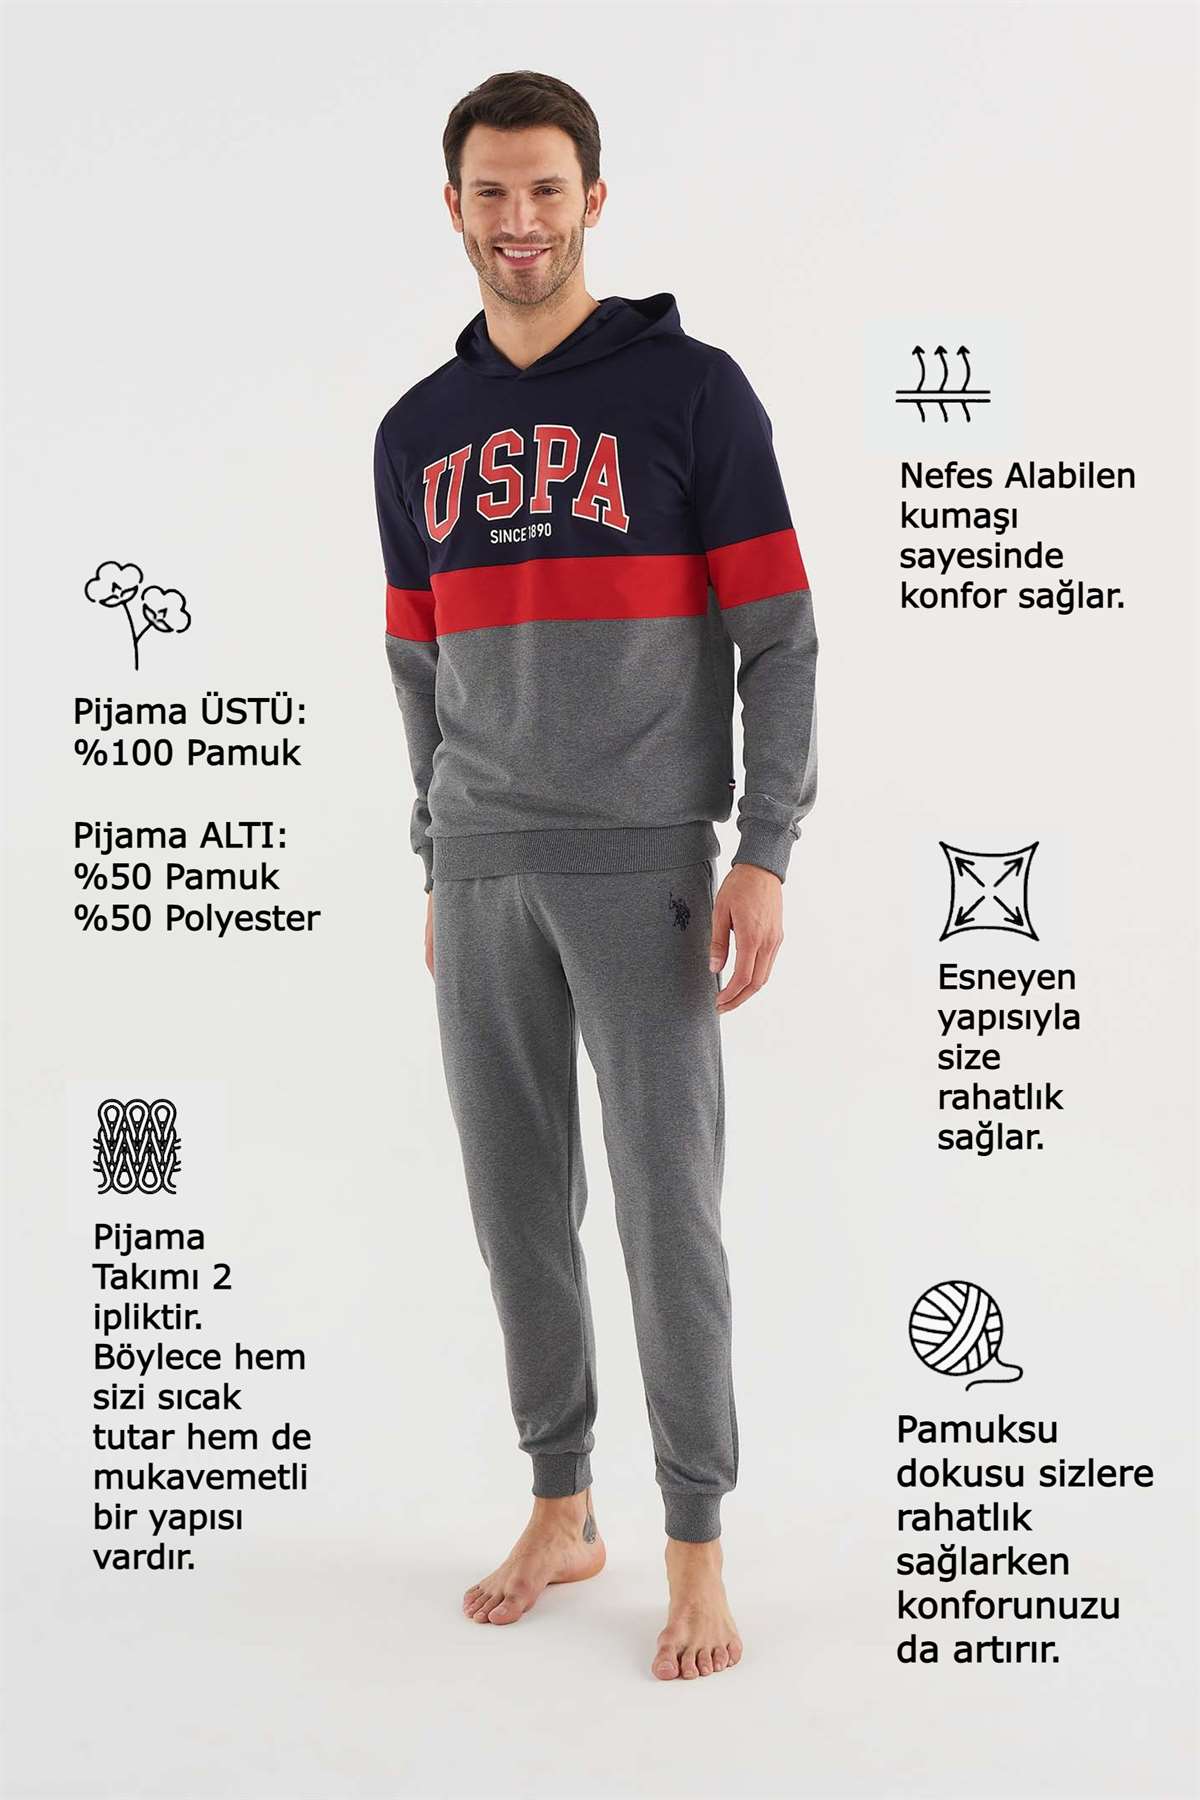 U.S. POLO Assn.Erkek Lacivert Pijama Takımı indirimli fiyat seçenekleri ile  modcollection.com.tr 'de Pijama kategorisinde sizi bekliyor!